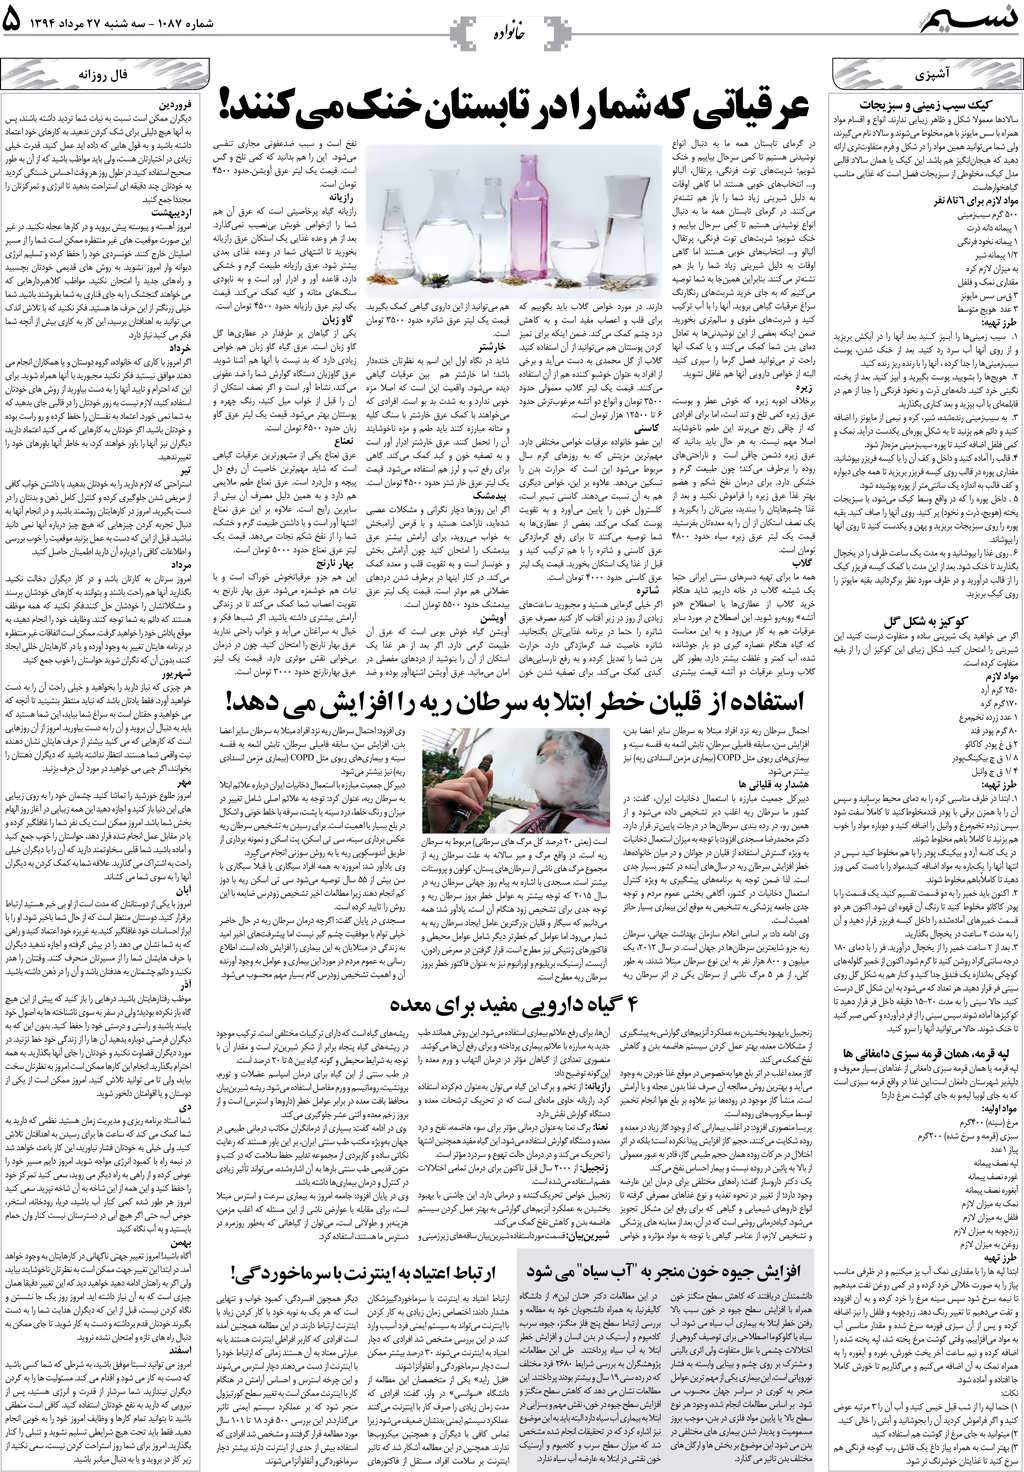 صفحه خانواده روزنامه نسیم شماره 1087